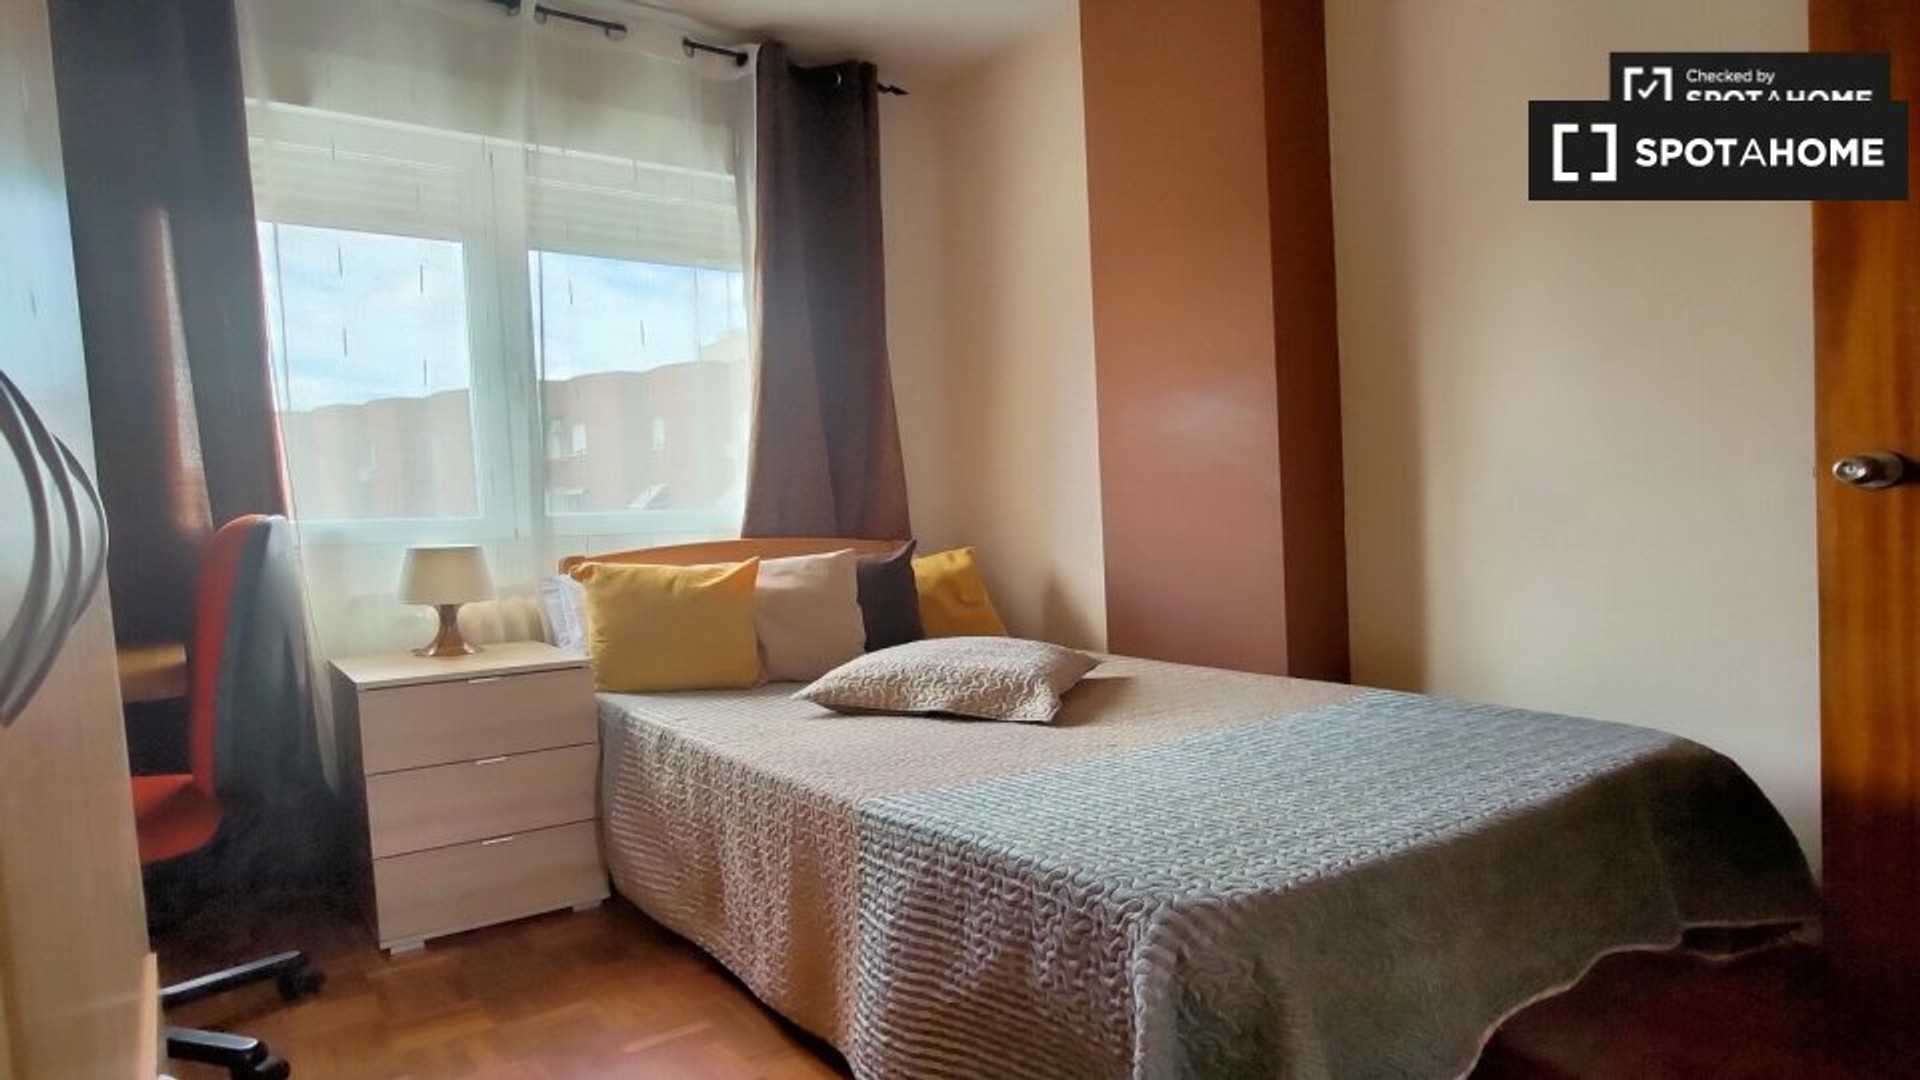 Alcalá De Henares de çift kişilik yataklı kiralık oda